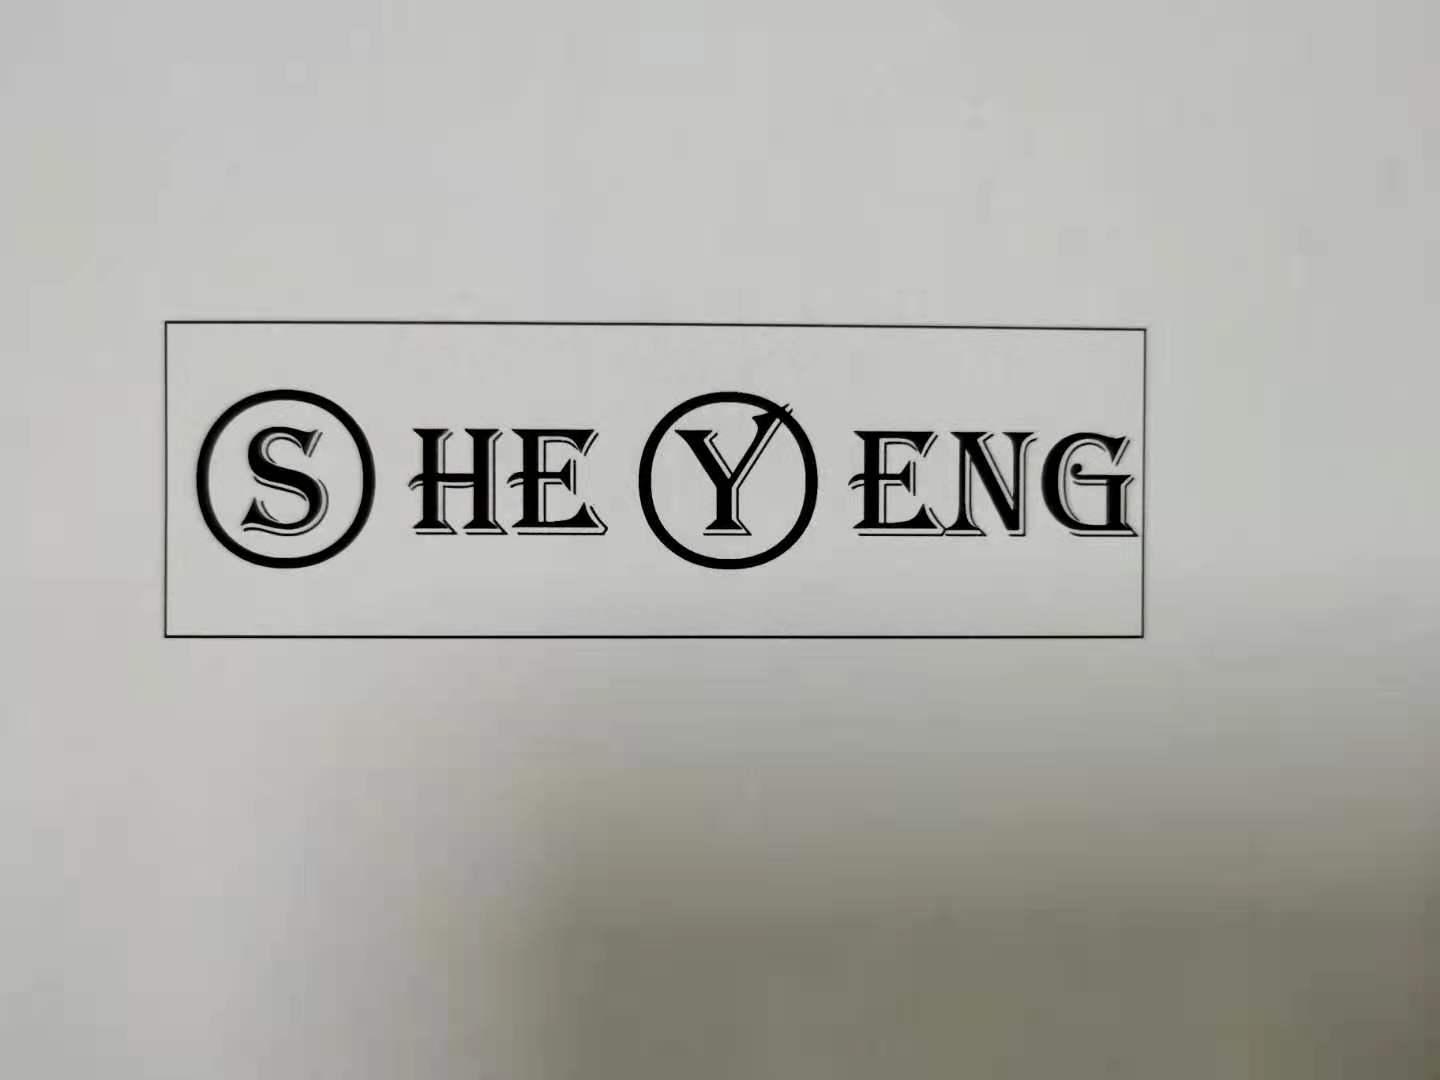 SHE YENG